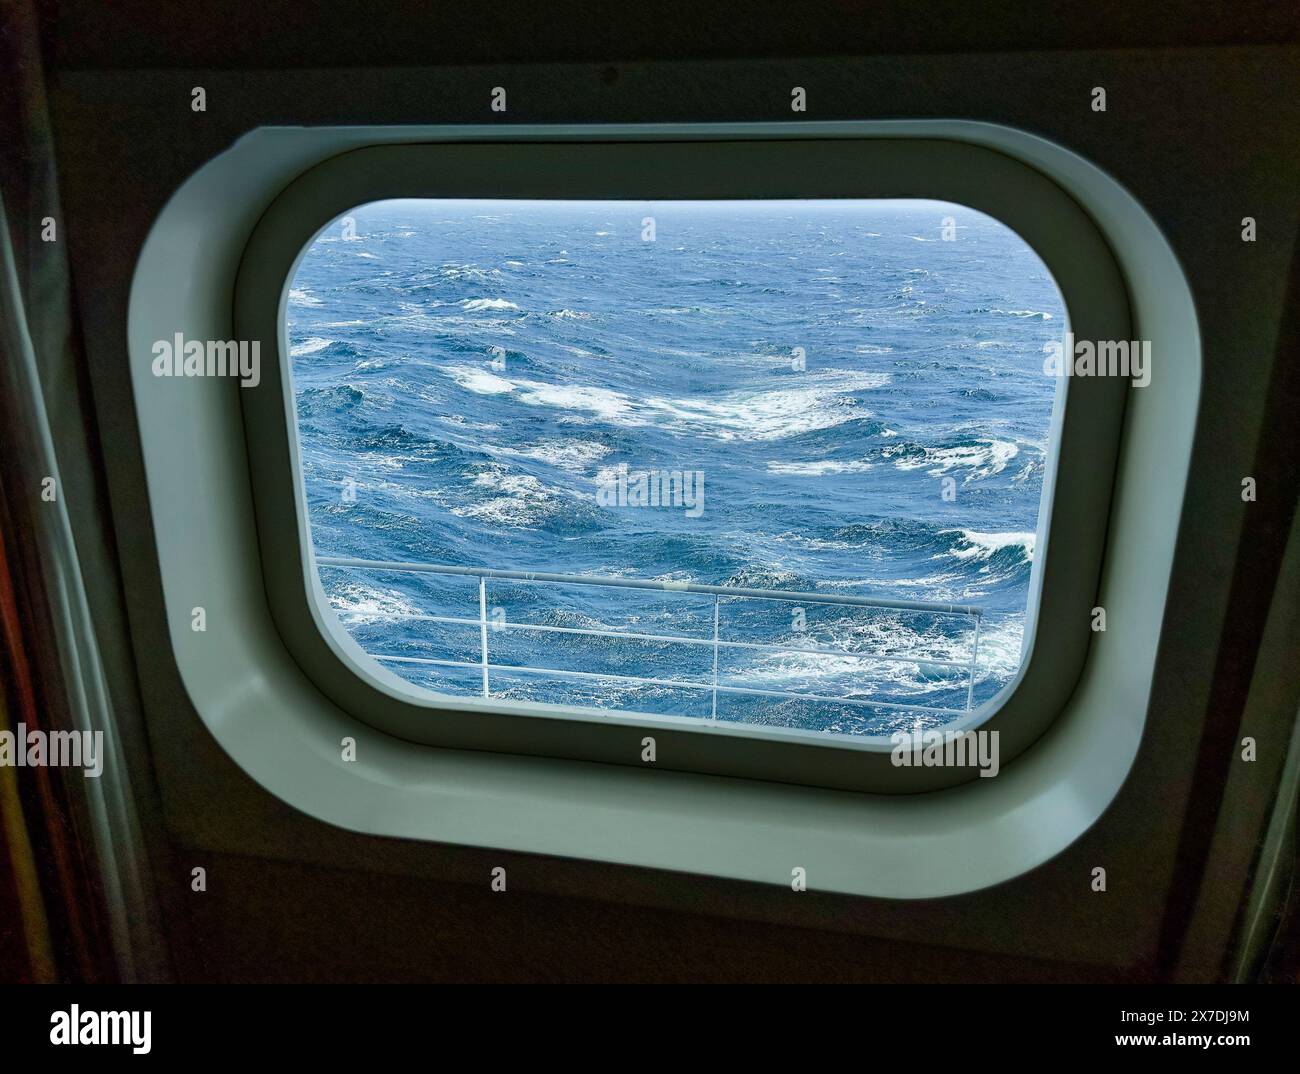 Bullaugenfenster Blick auf den Nordpazifik von Deck 8 aus gesehen. Die Wellen haben weiße Kappen, die raue See zeigen. Die Schiene ist unten zu sehen. Stockfoto